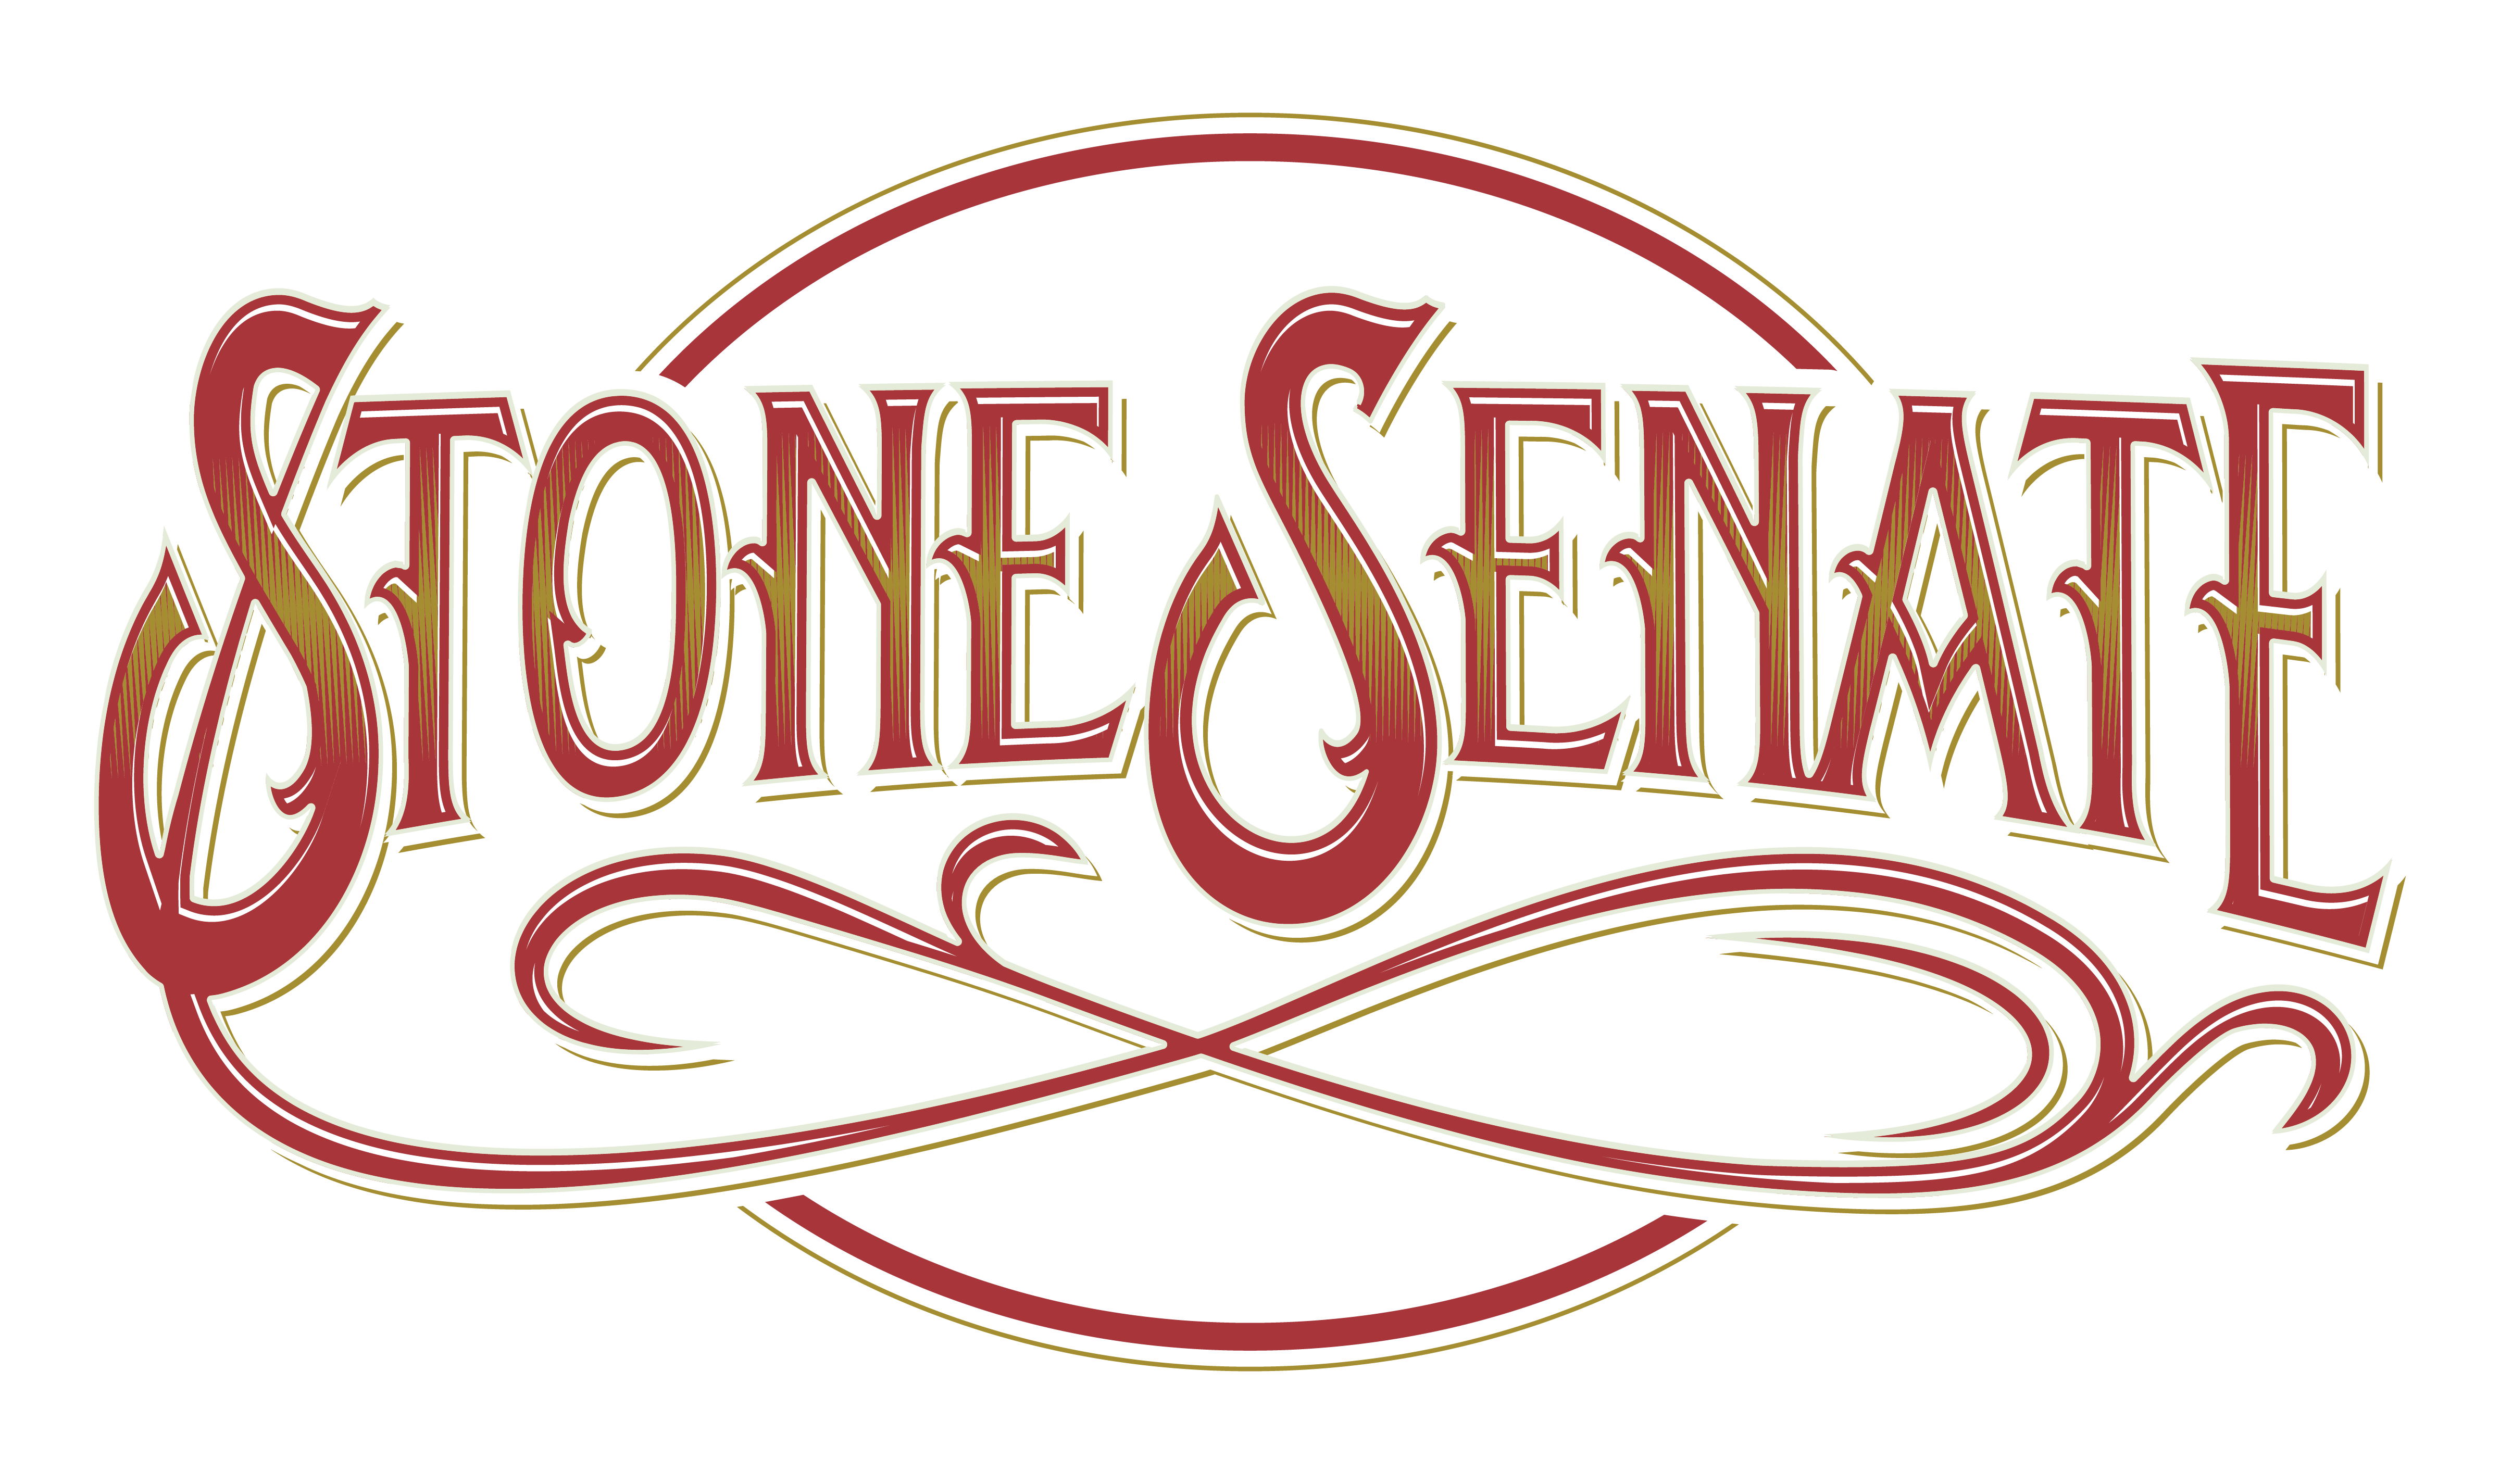 stone senate tour